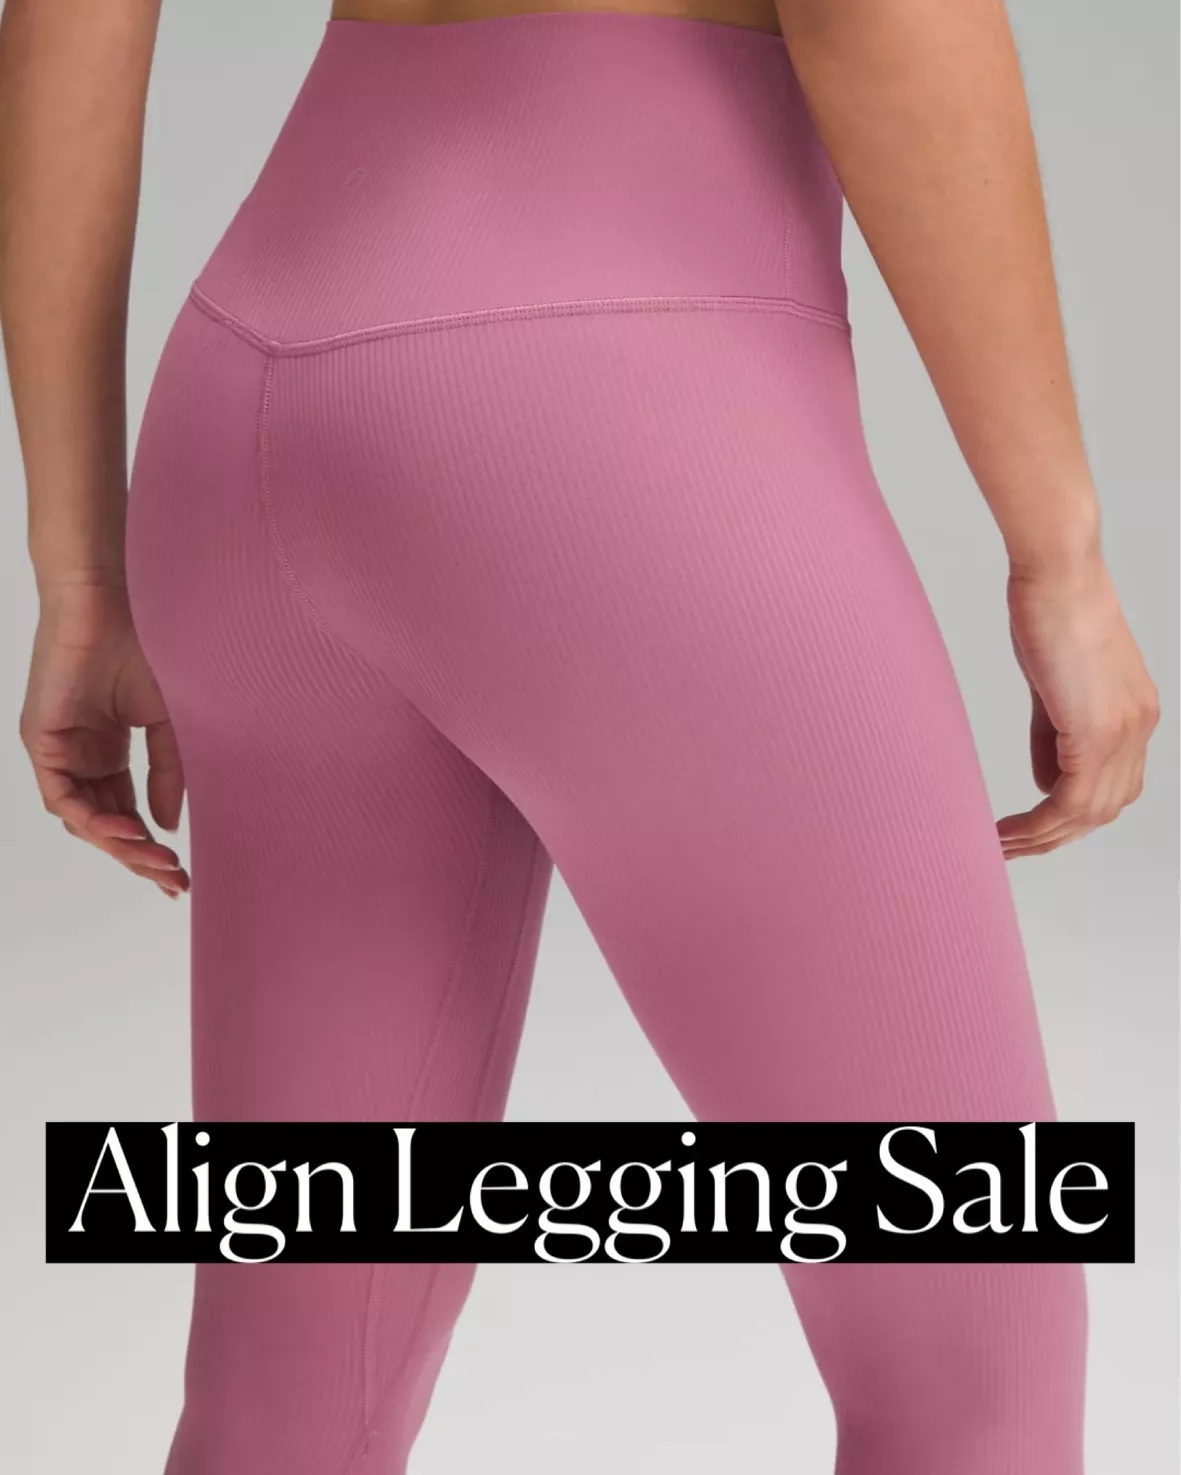 LULULEMON Align high-rise leggings … curated on LTK